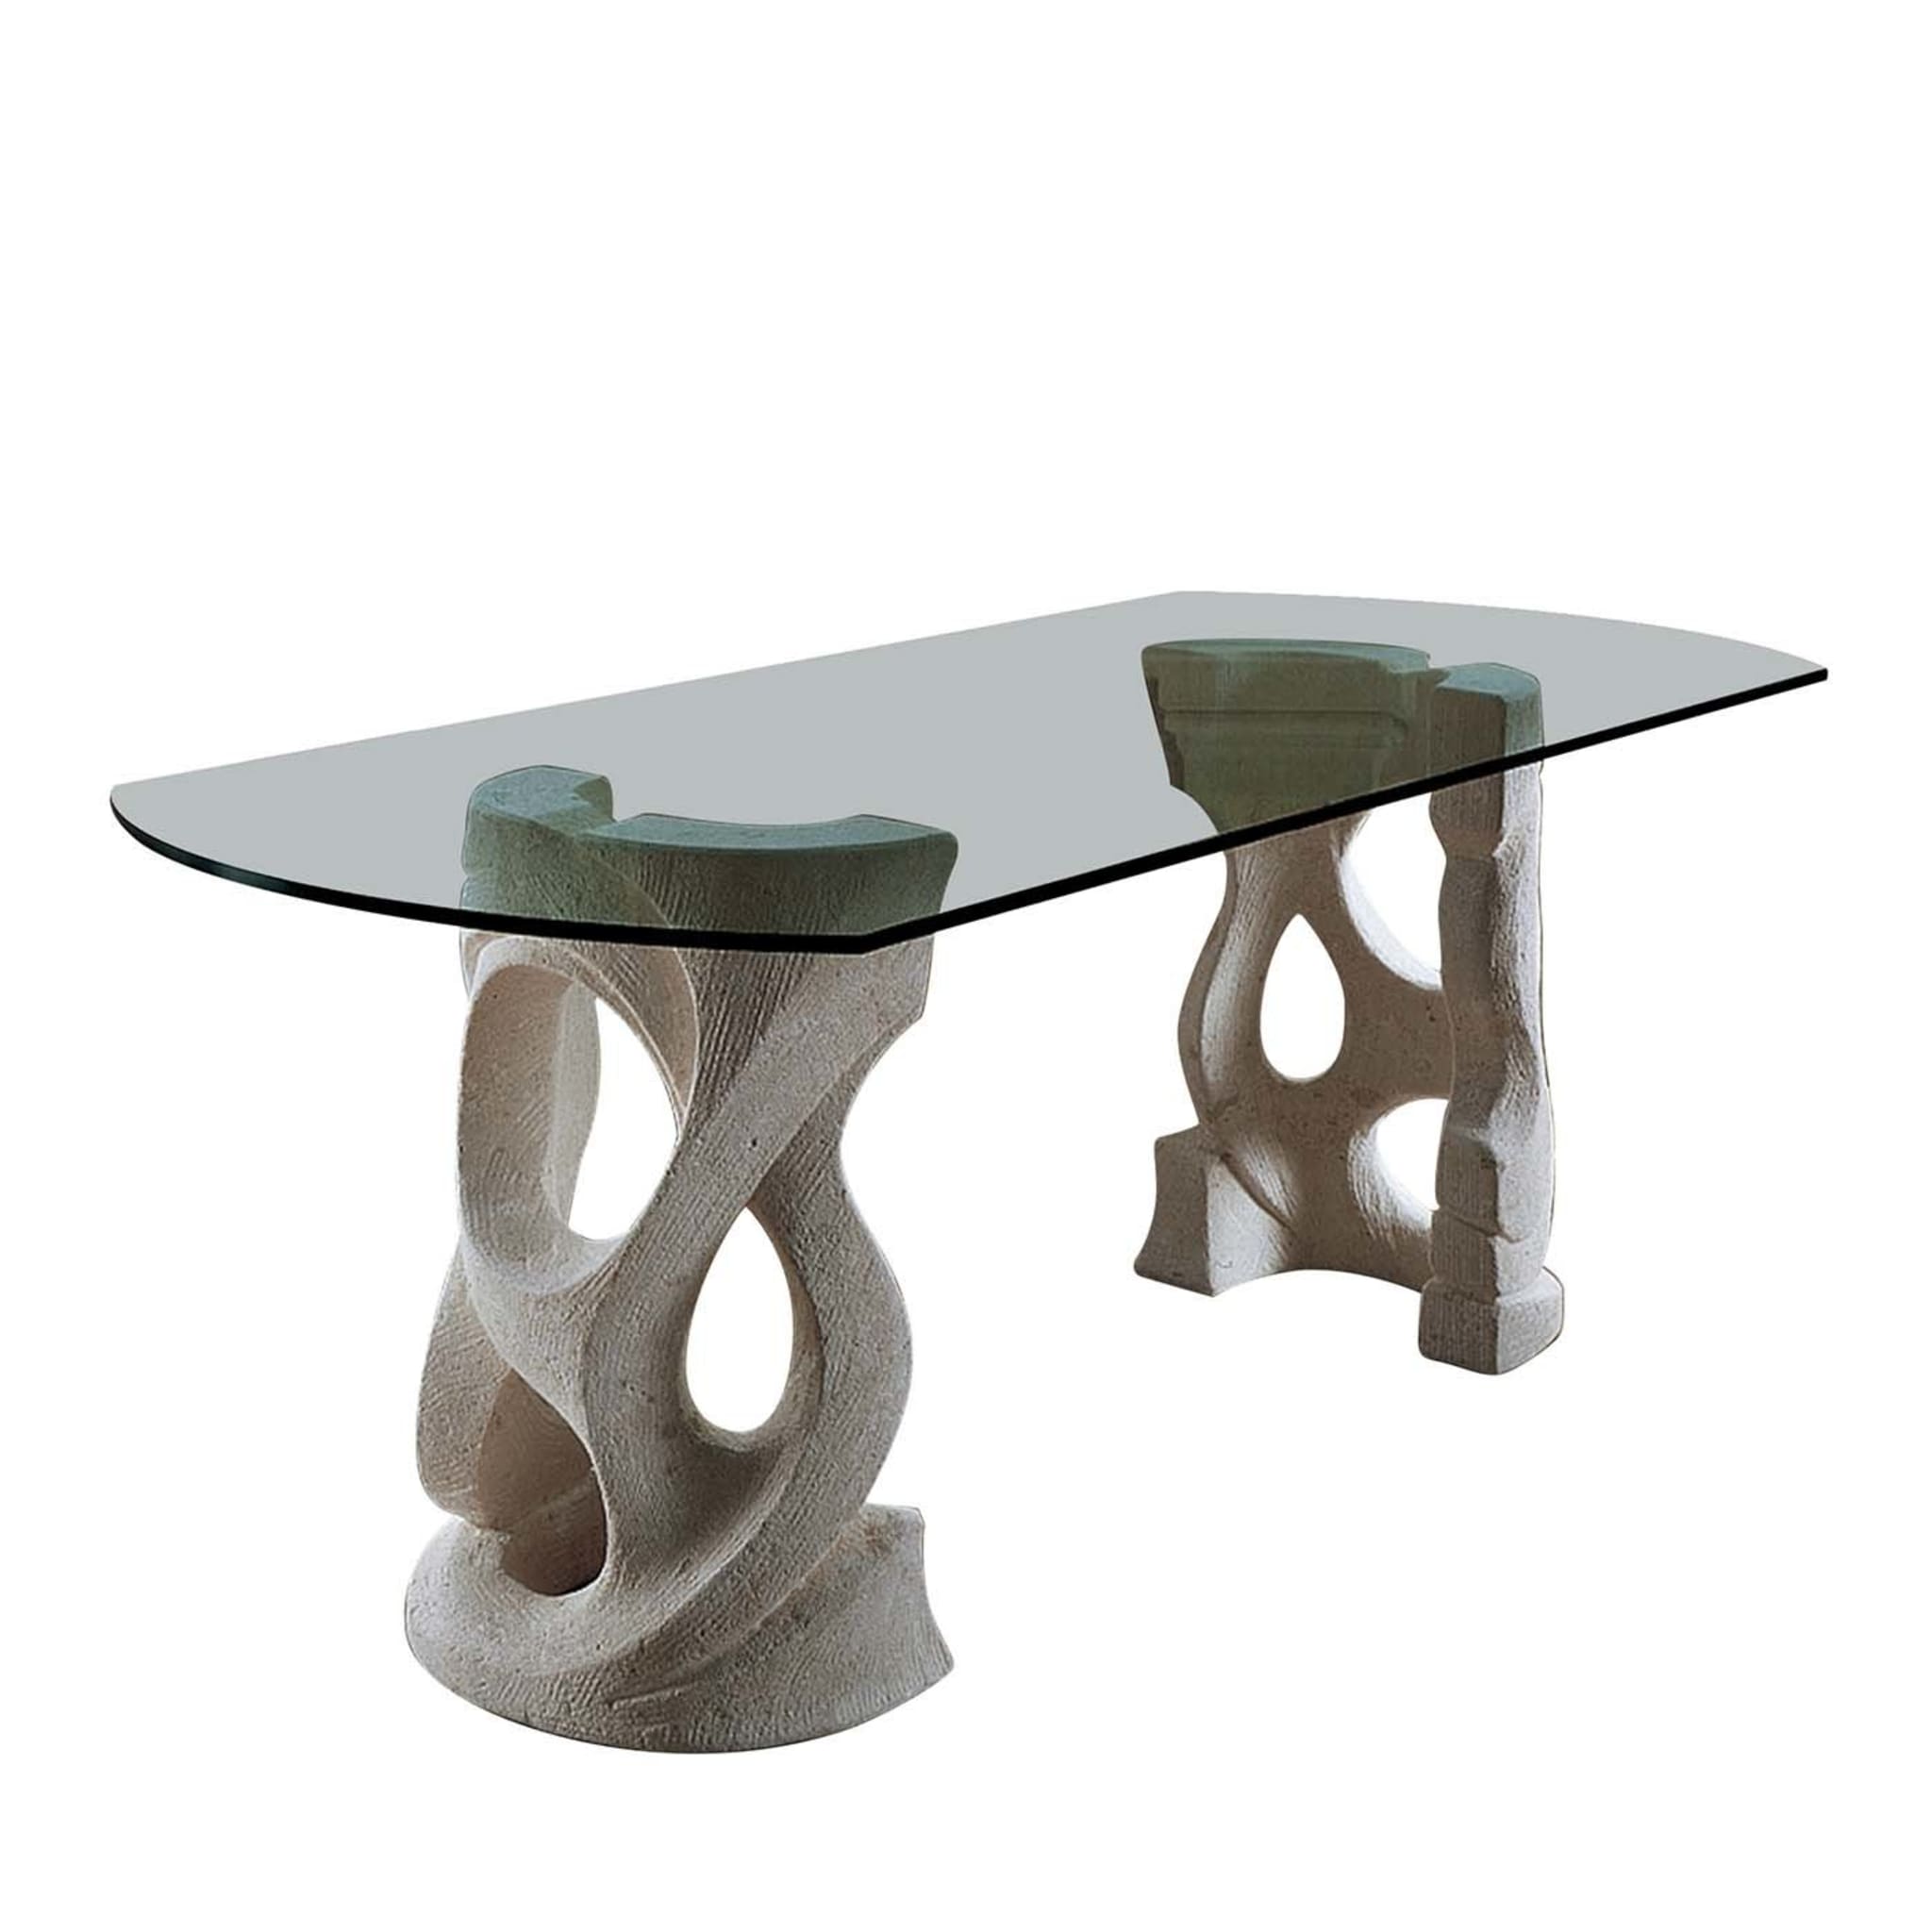 Ca’ d’oro Dining Table by Giandomenico Sandrini - Main view